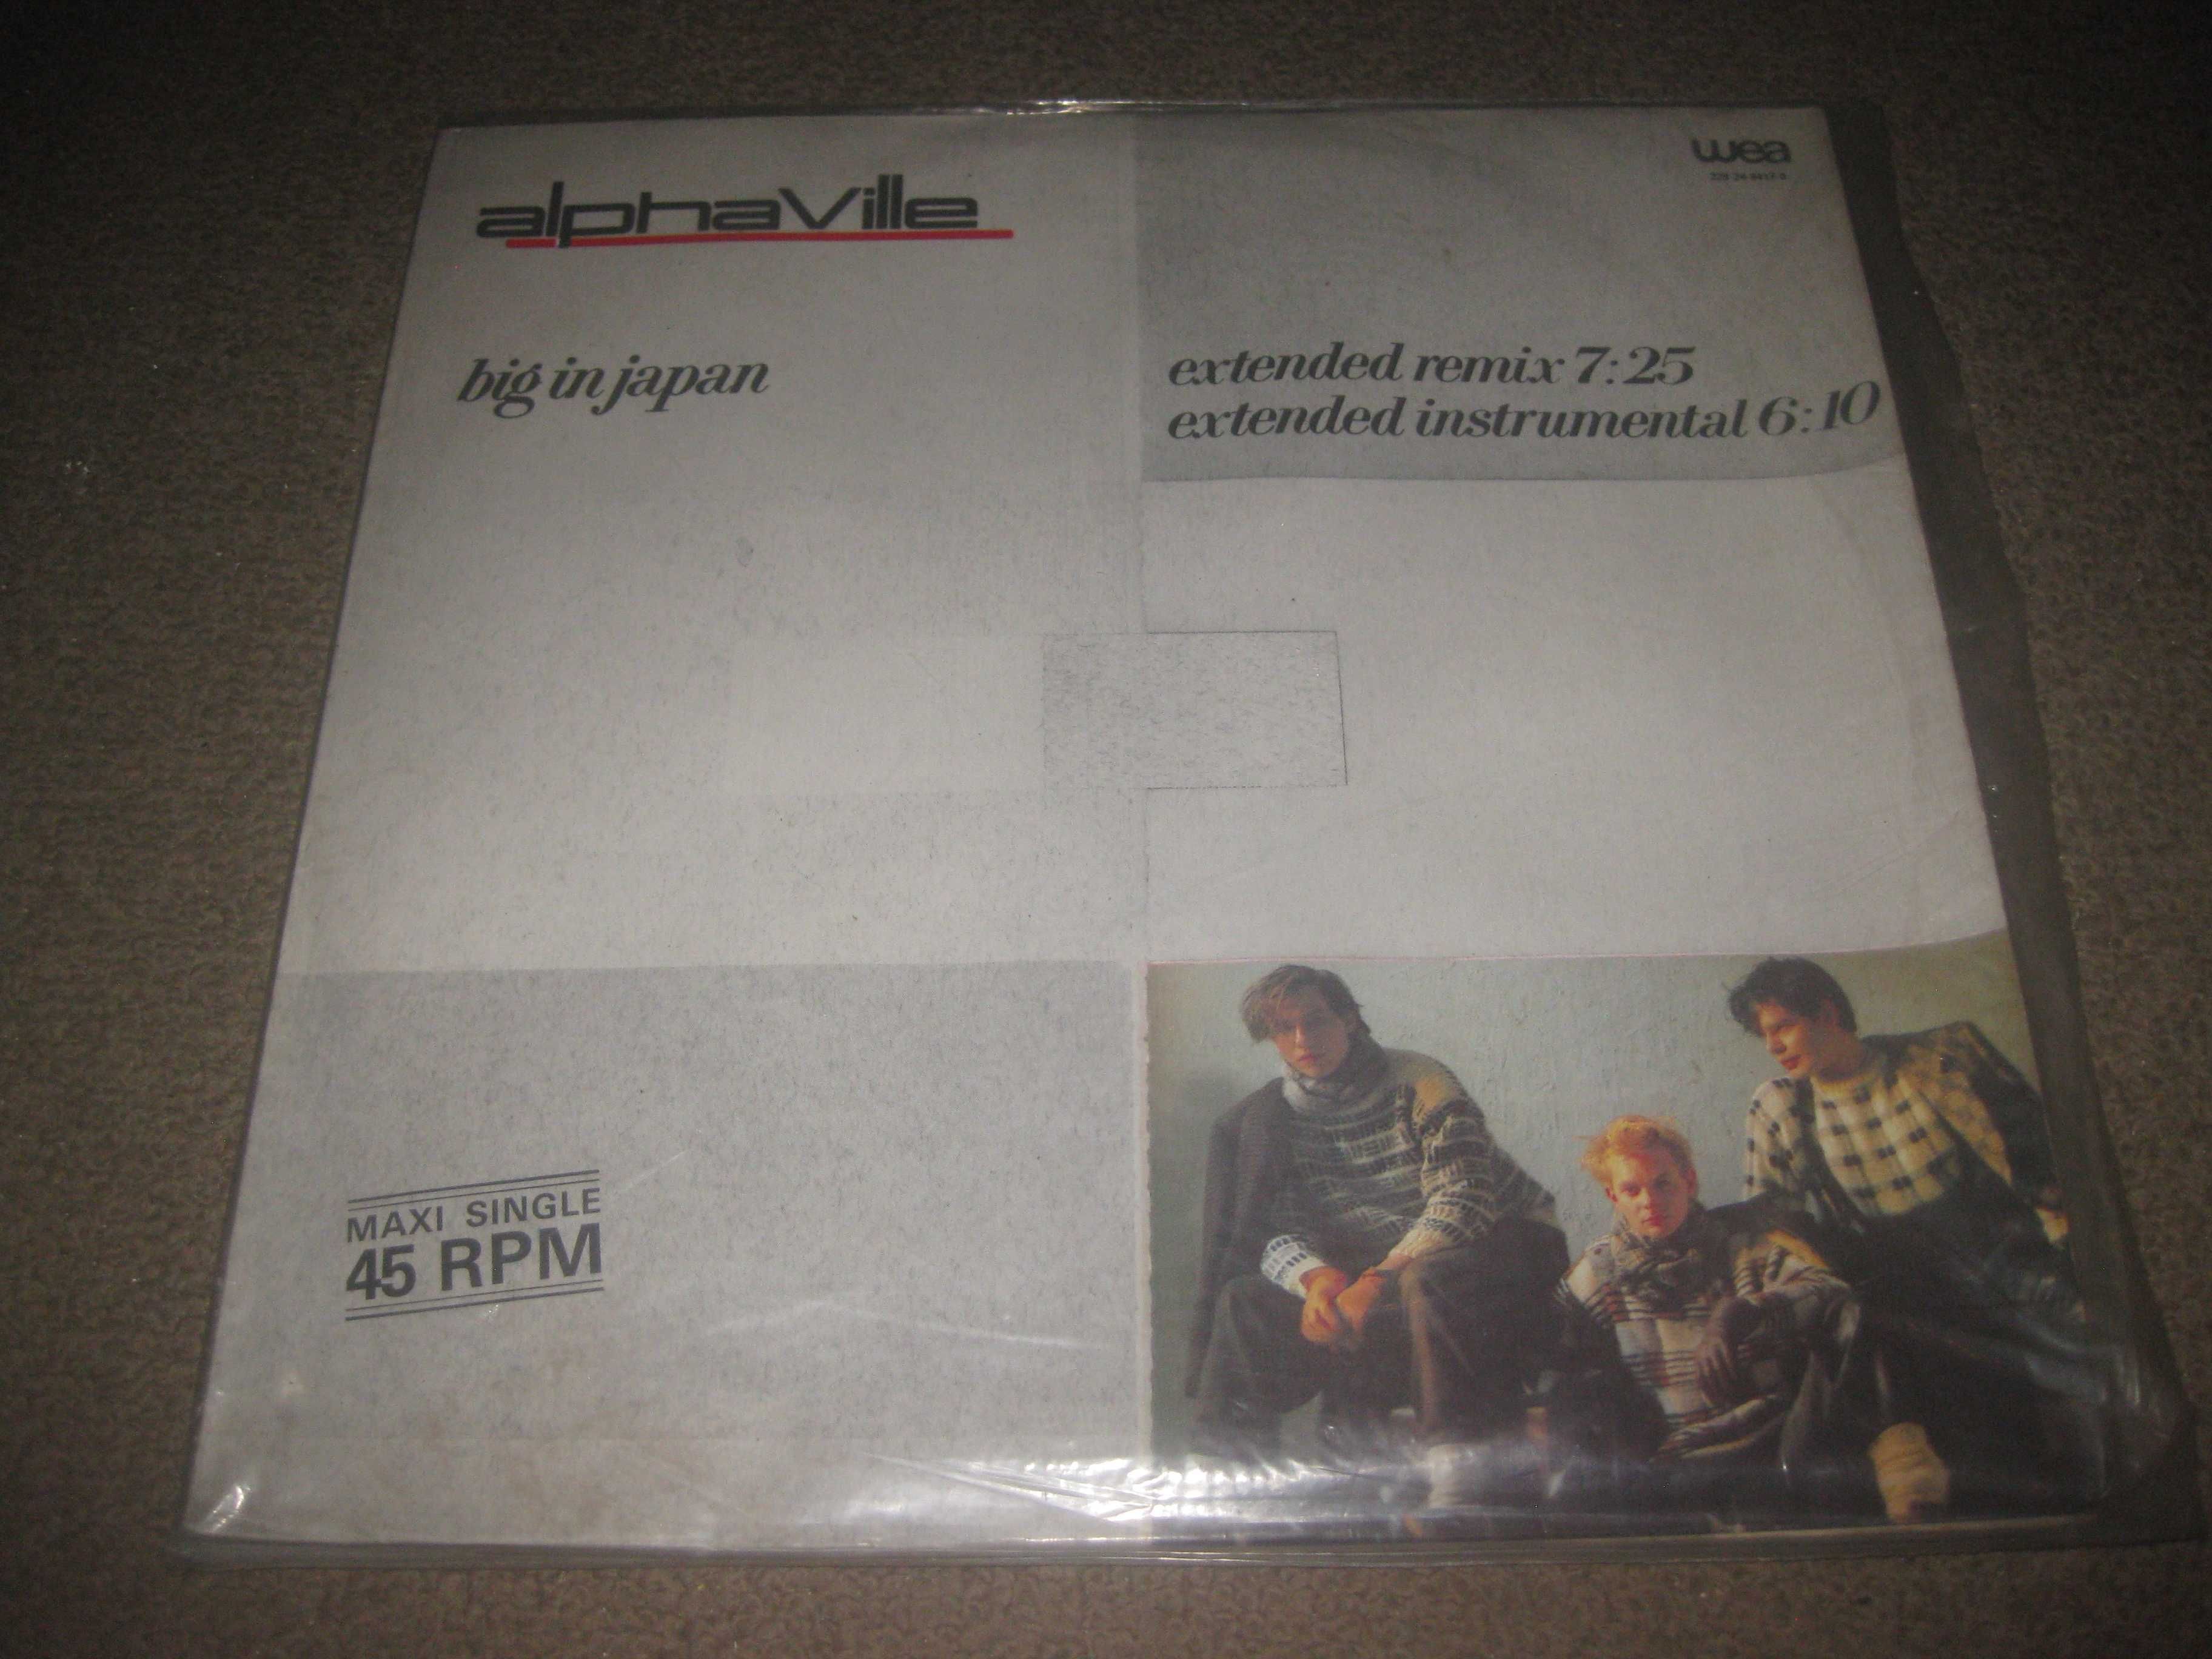 Maxi Single em Vinil 45 rpm dos Alphaville "Big In Japan"